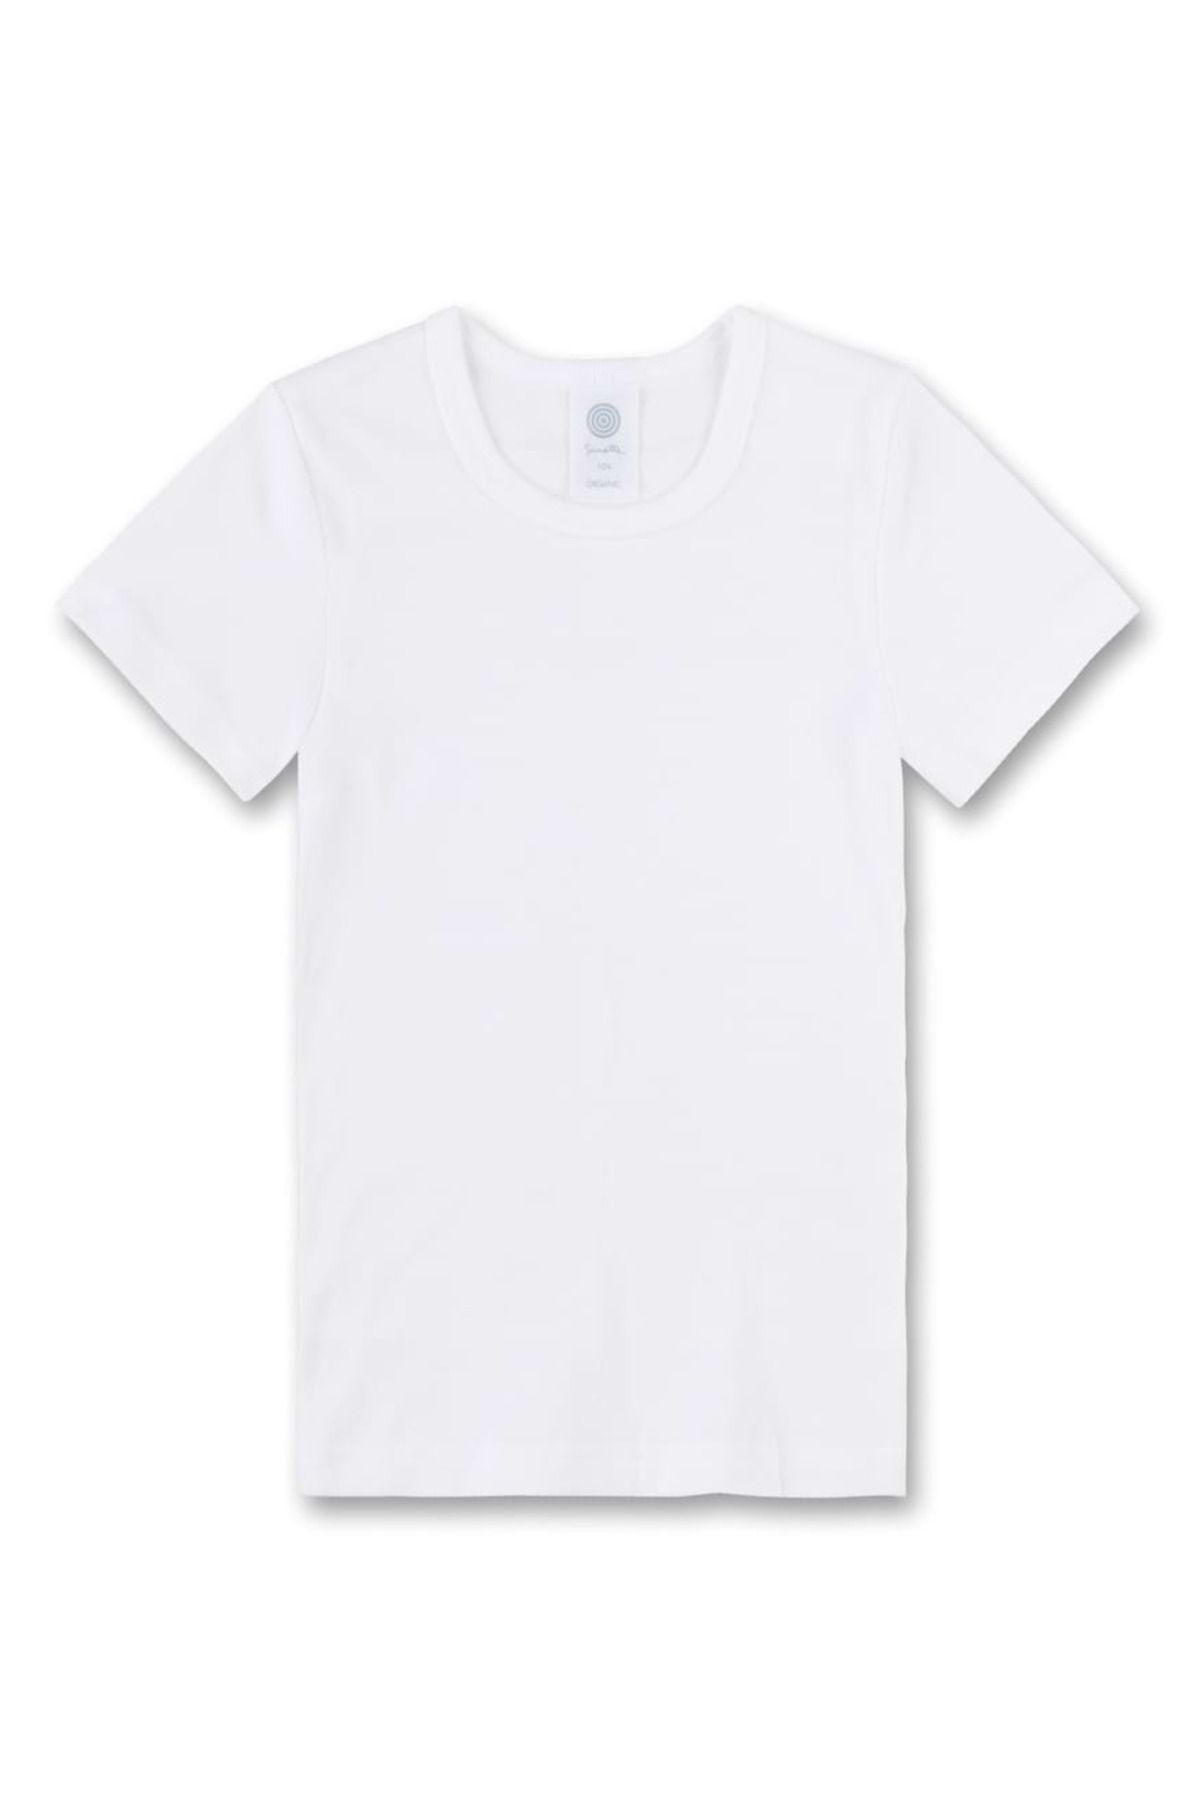 Sanetta Kinder Unterhemd - Kurzarm, Baumwolle, einfarbig - unisex, Trendyol T-Shirt